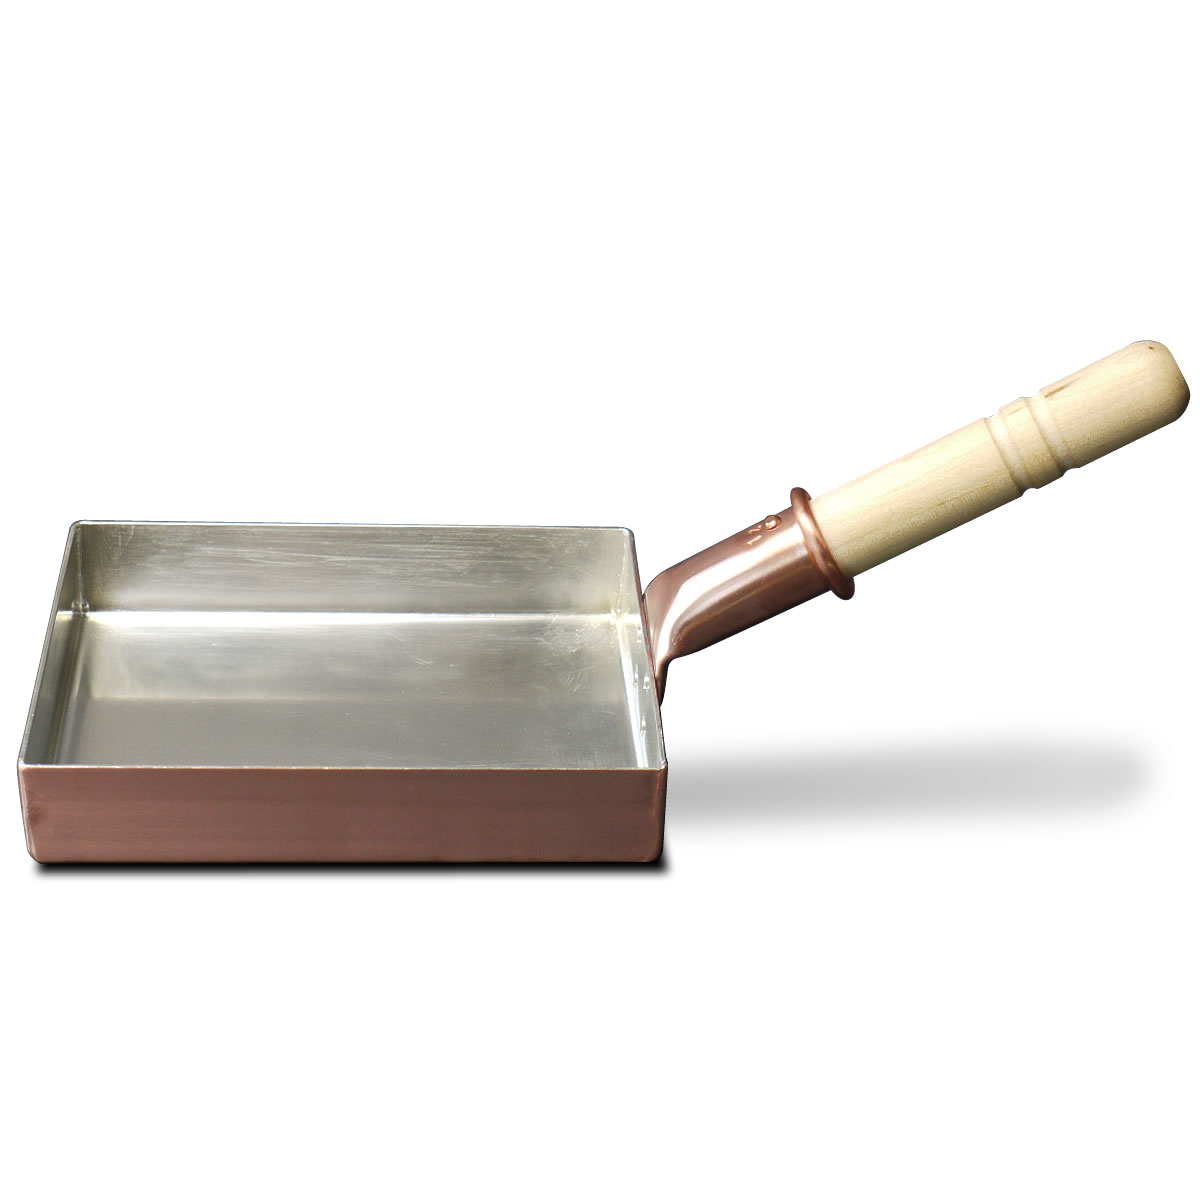 至高 中村銅器製作所 銅玉子焼き鍋 12長 限定品 銅製卵焼き器 125×170mm